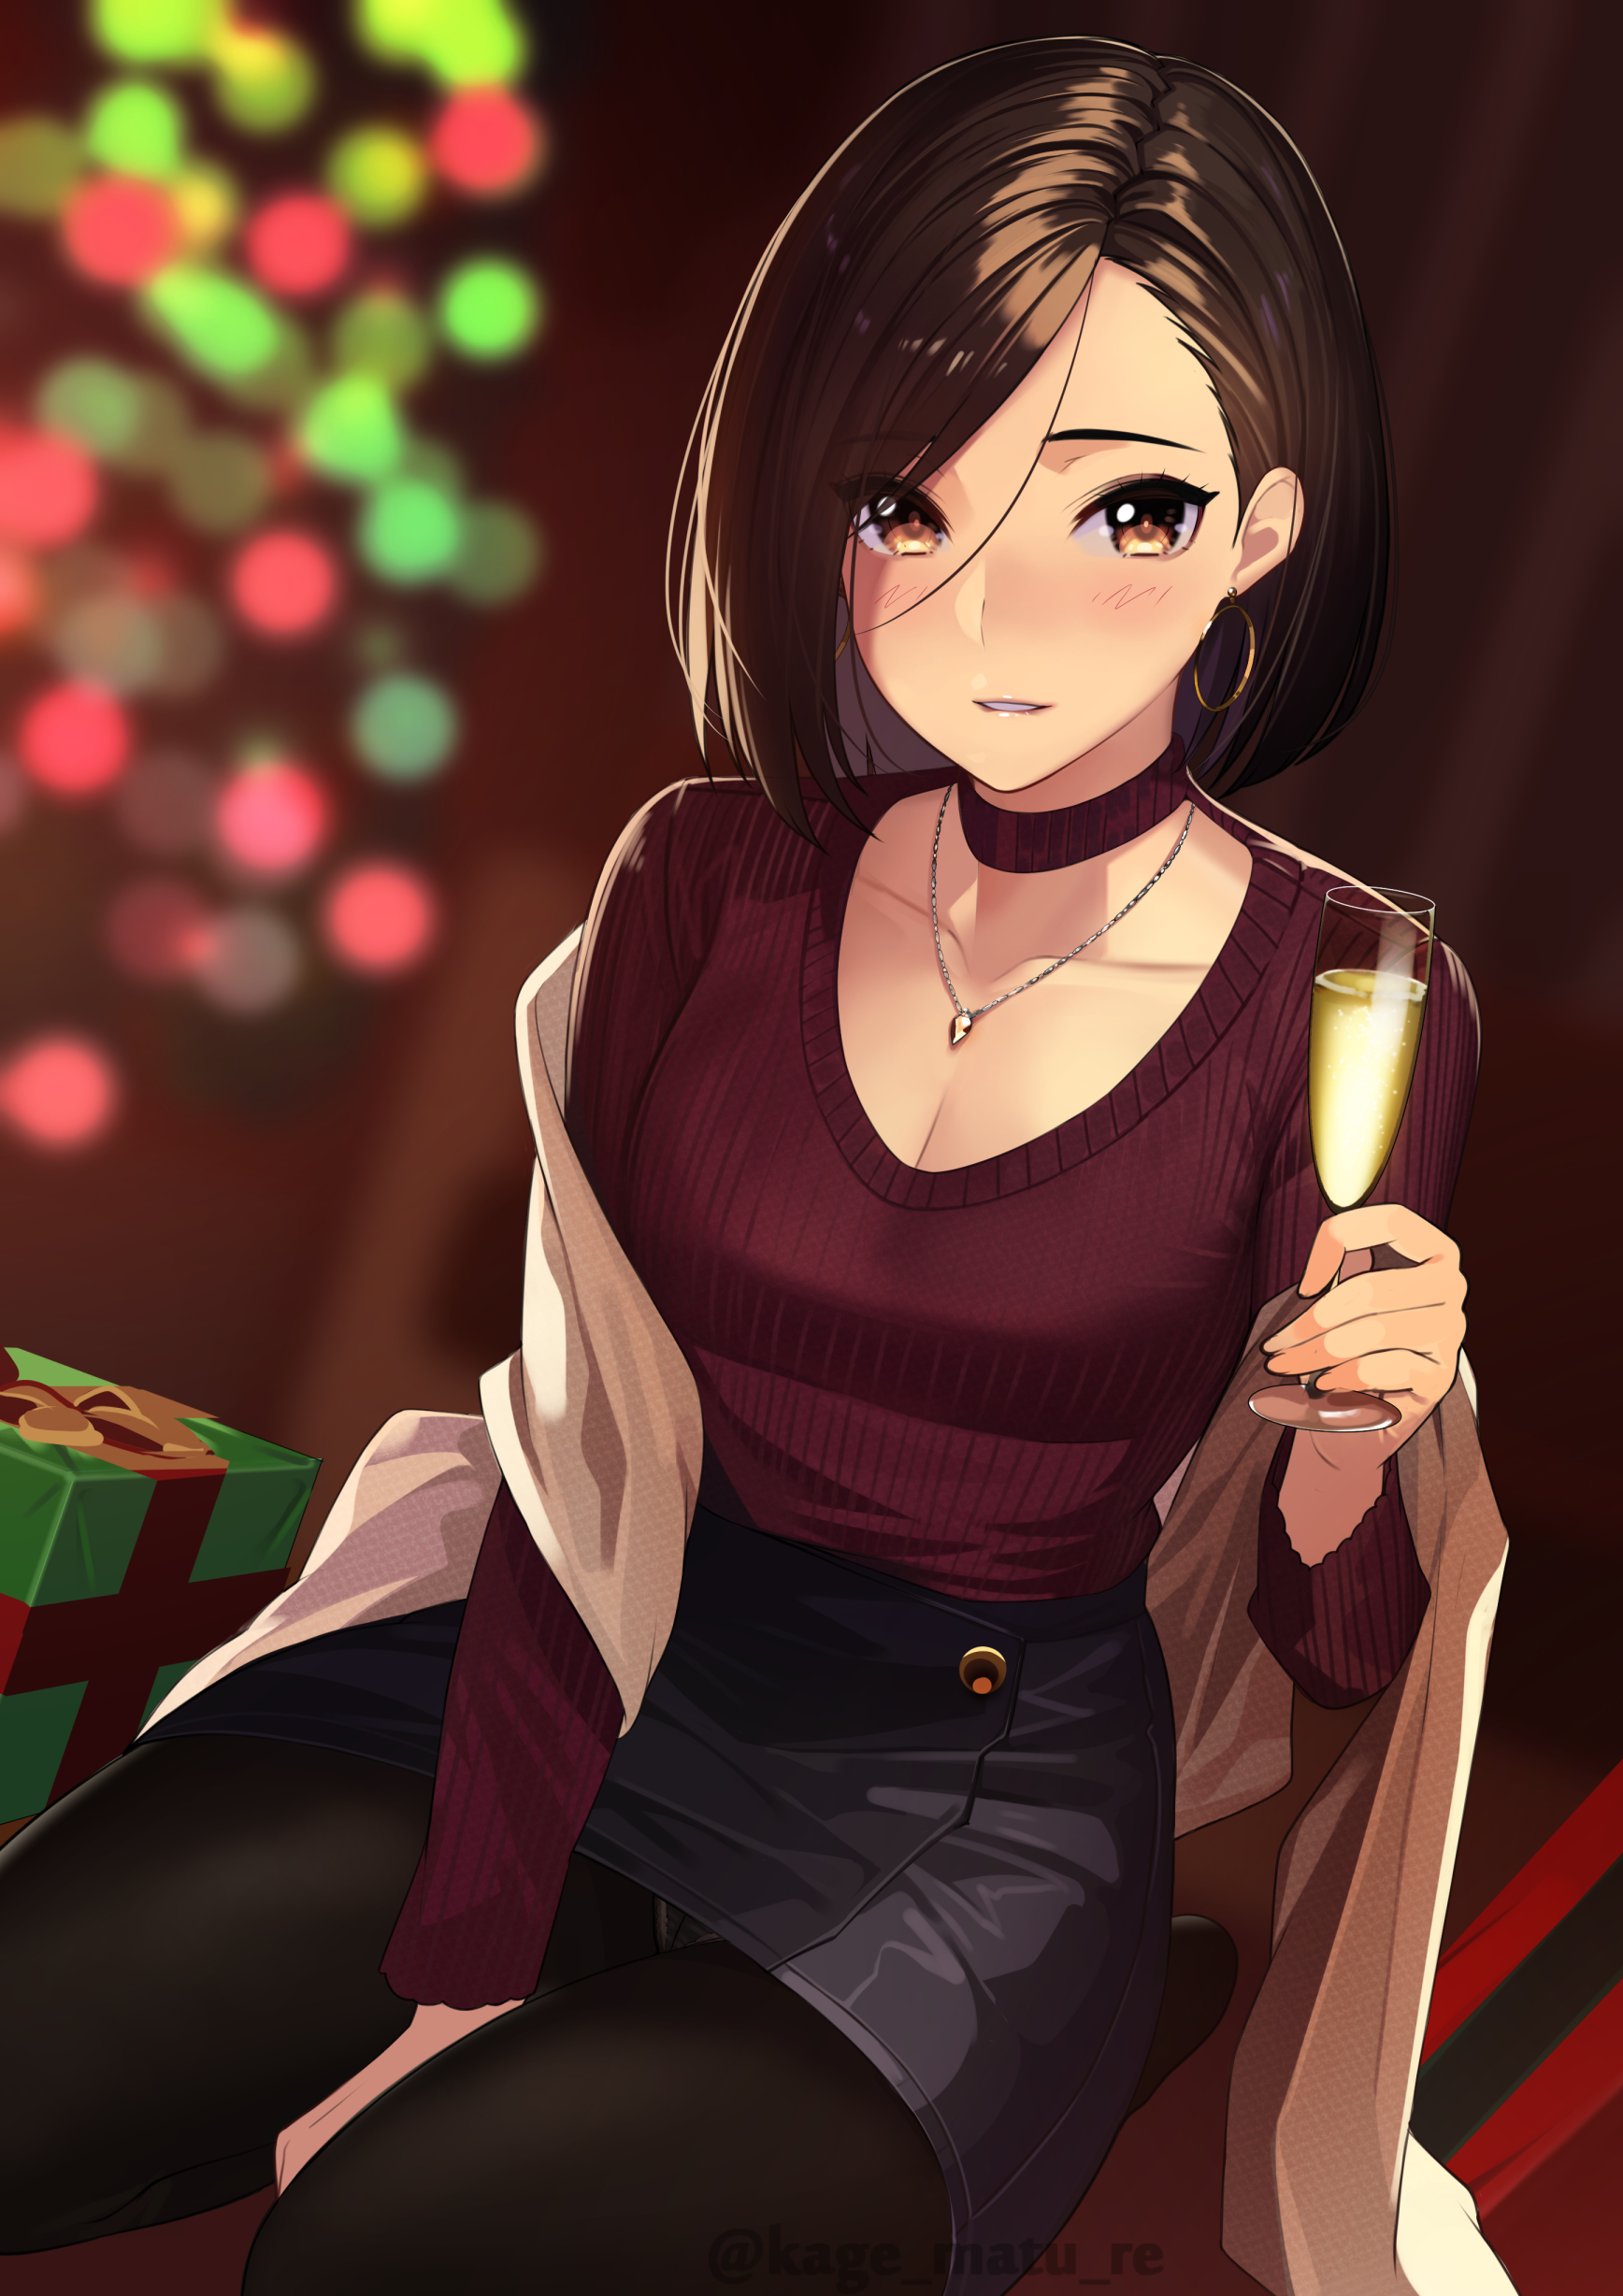 Anime Anime Girls Digital Art Artwork 2D Portrait Display Vertical Kagematsuri Christmas Champagne S 1736x2456